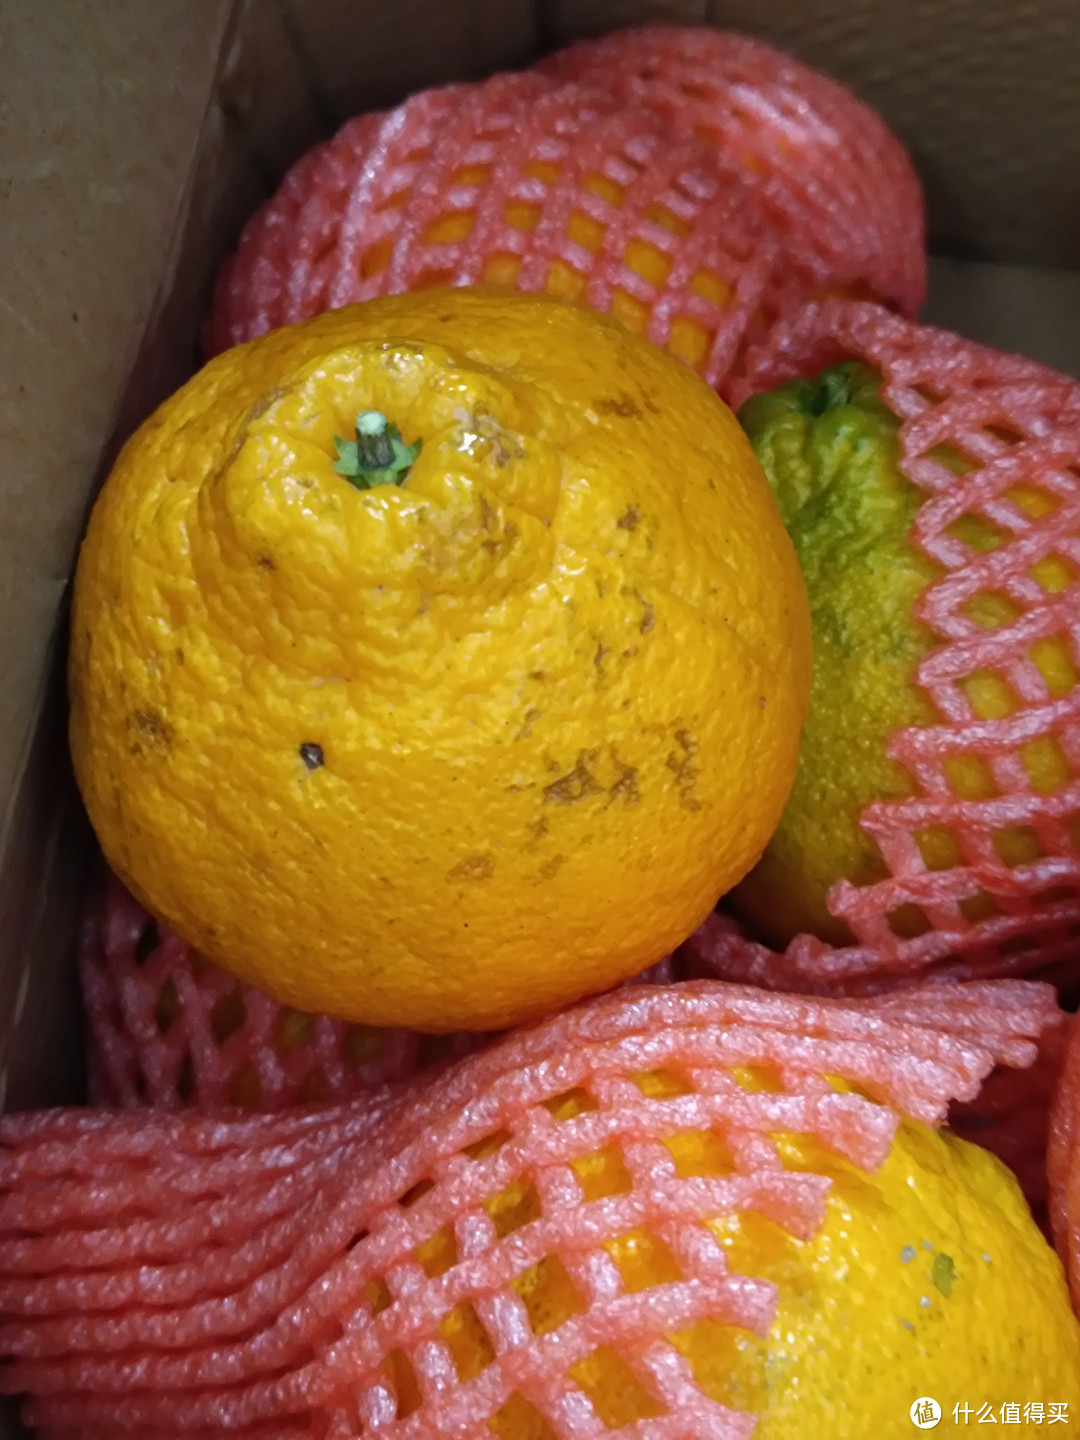 网购粑粑柑还是网购丑橘好吃？我觉得应该选粑粑柑。